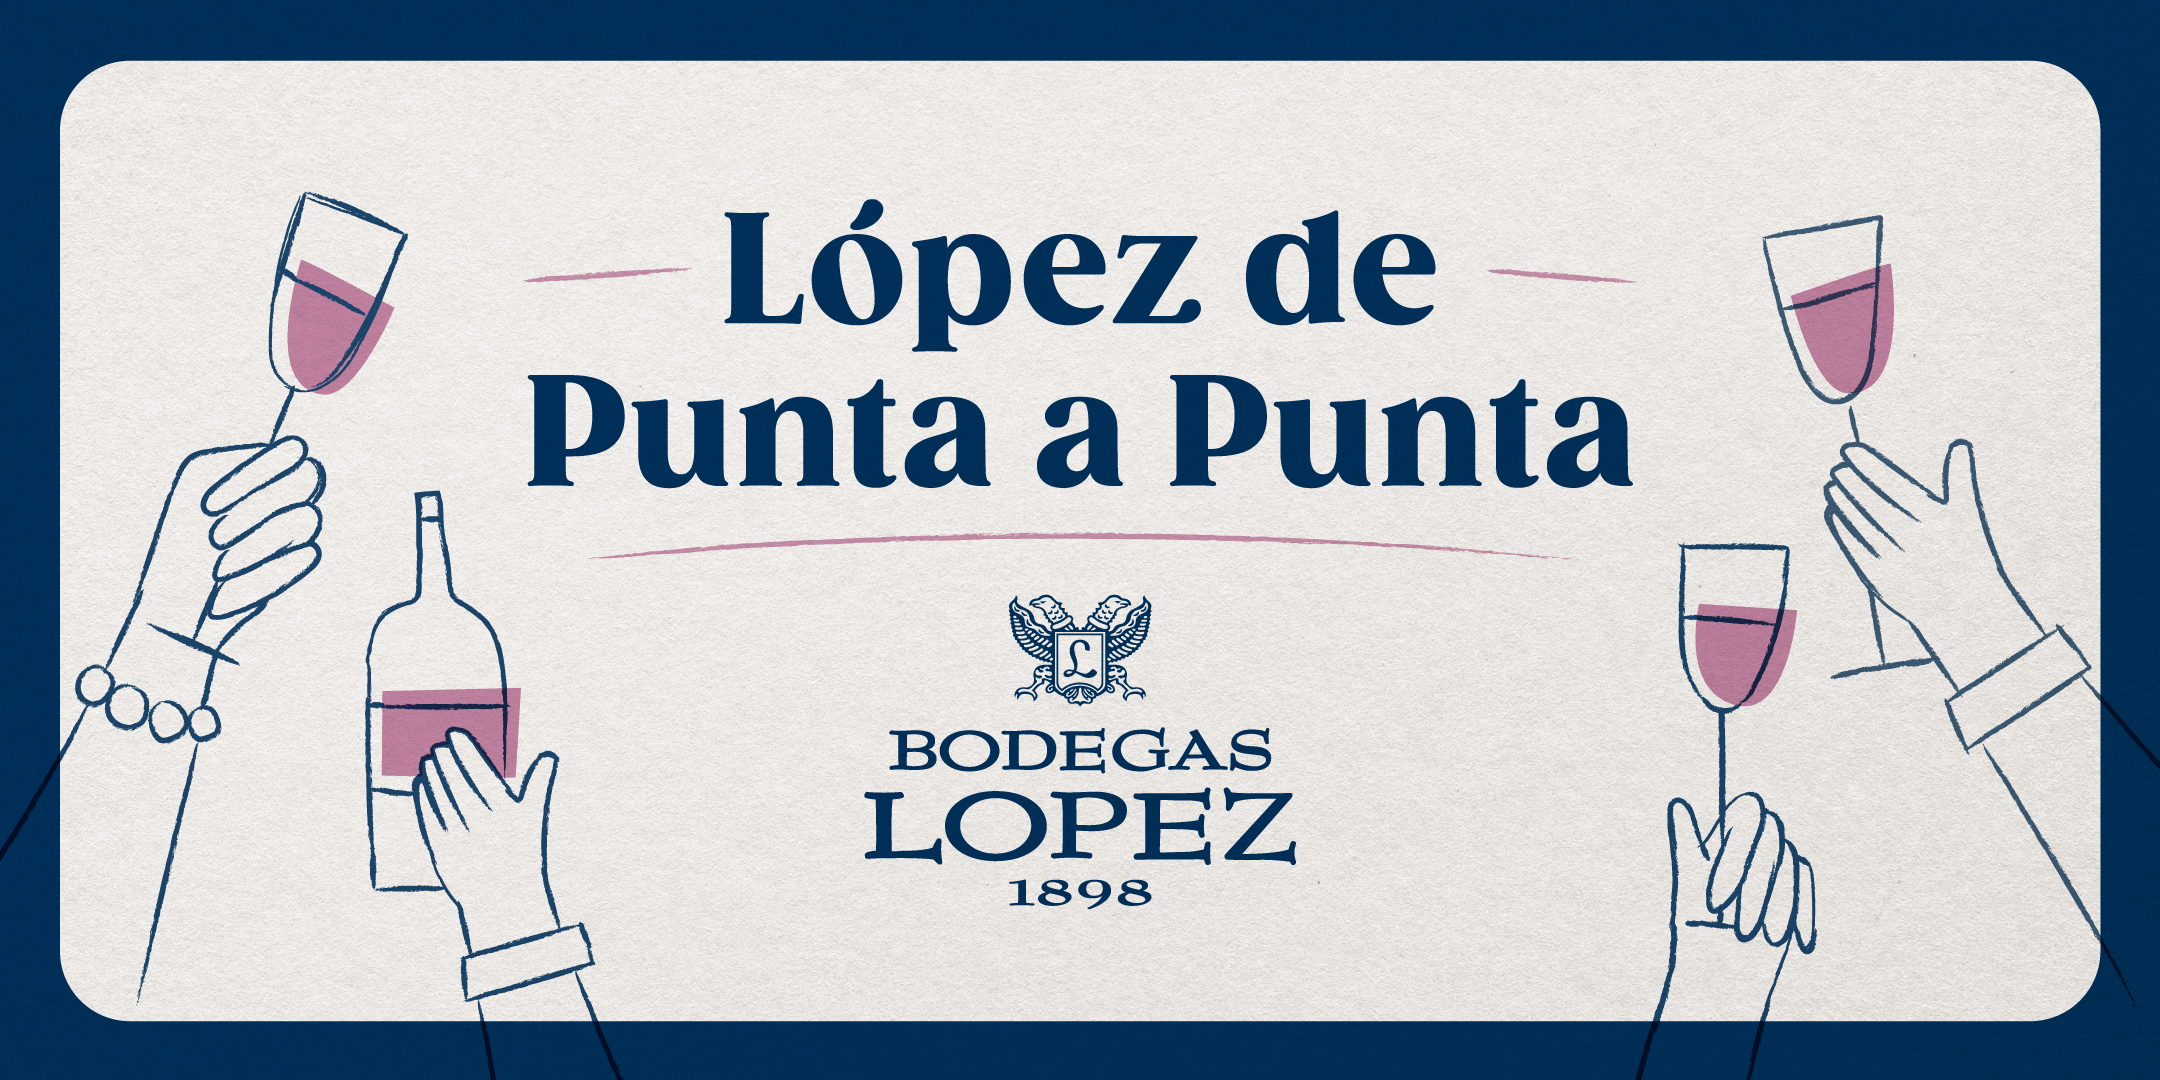 López de Punta a Punta, ¡ahora también abierta al público!